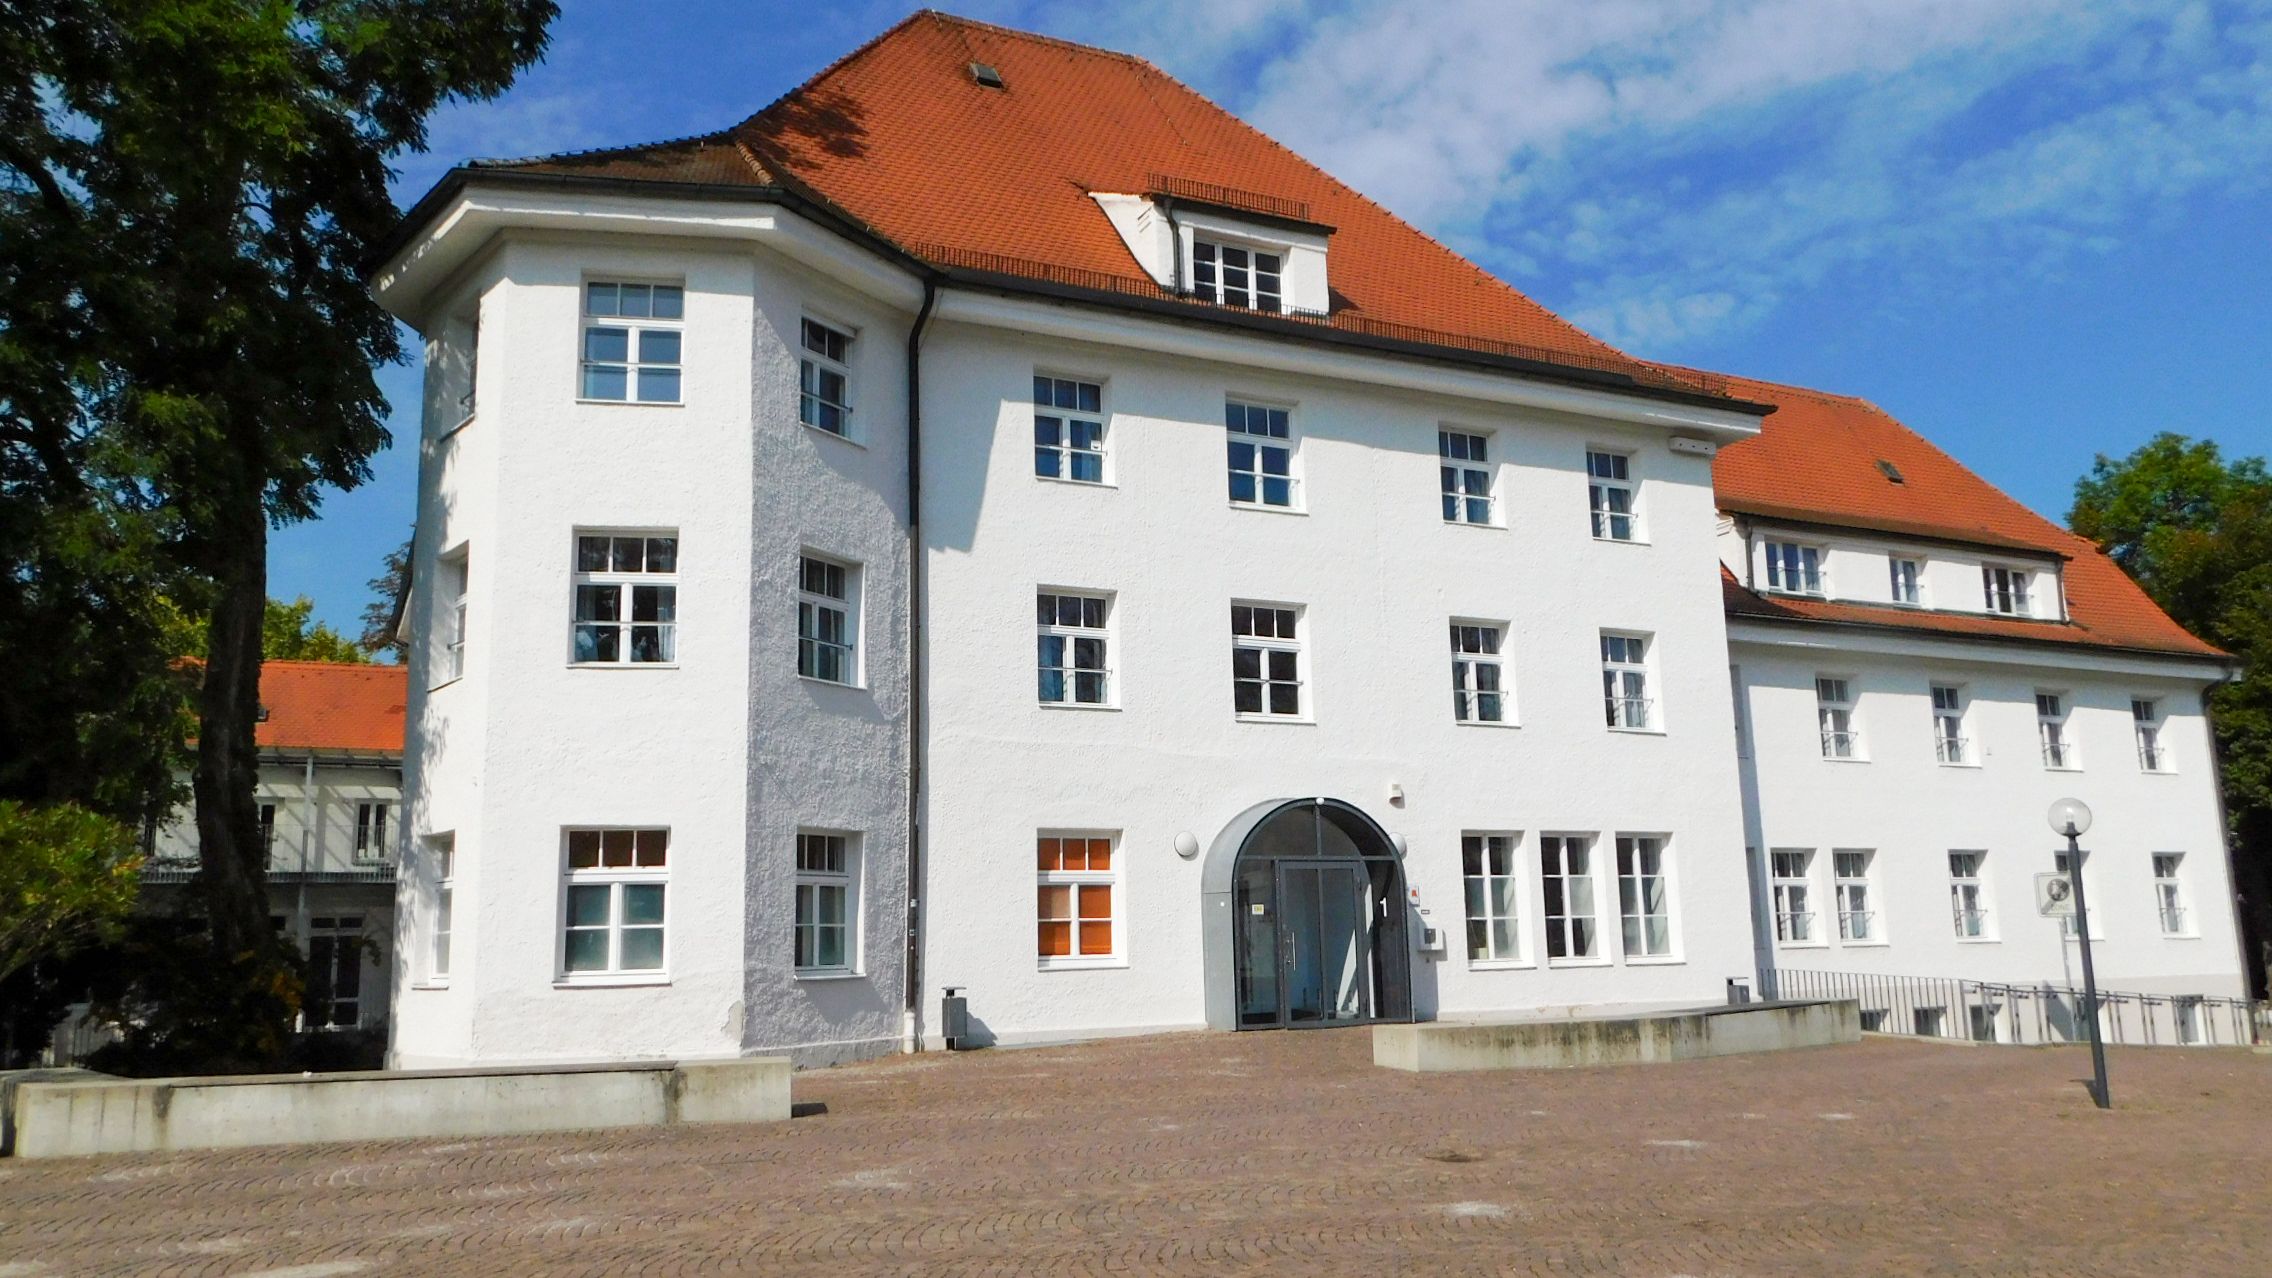 Fotografie der Scheibner Wirtschaftsschule in Dachau, das ehemalige Moorbad